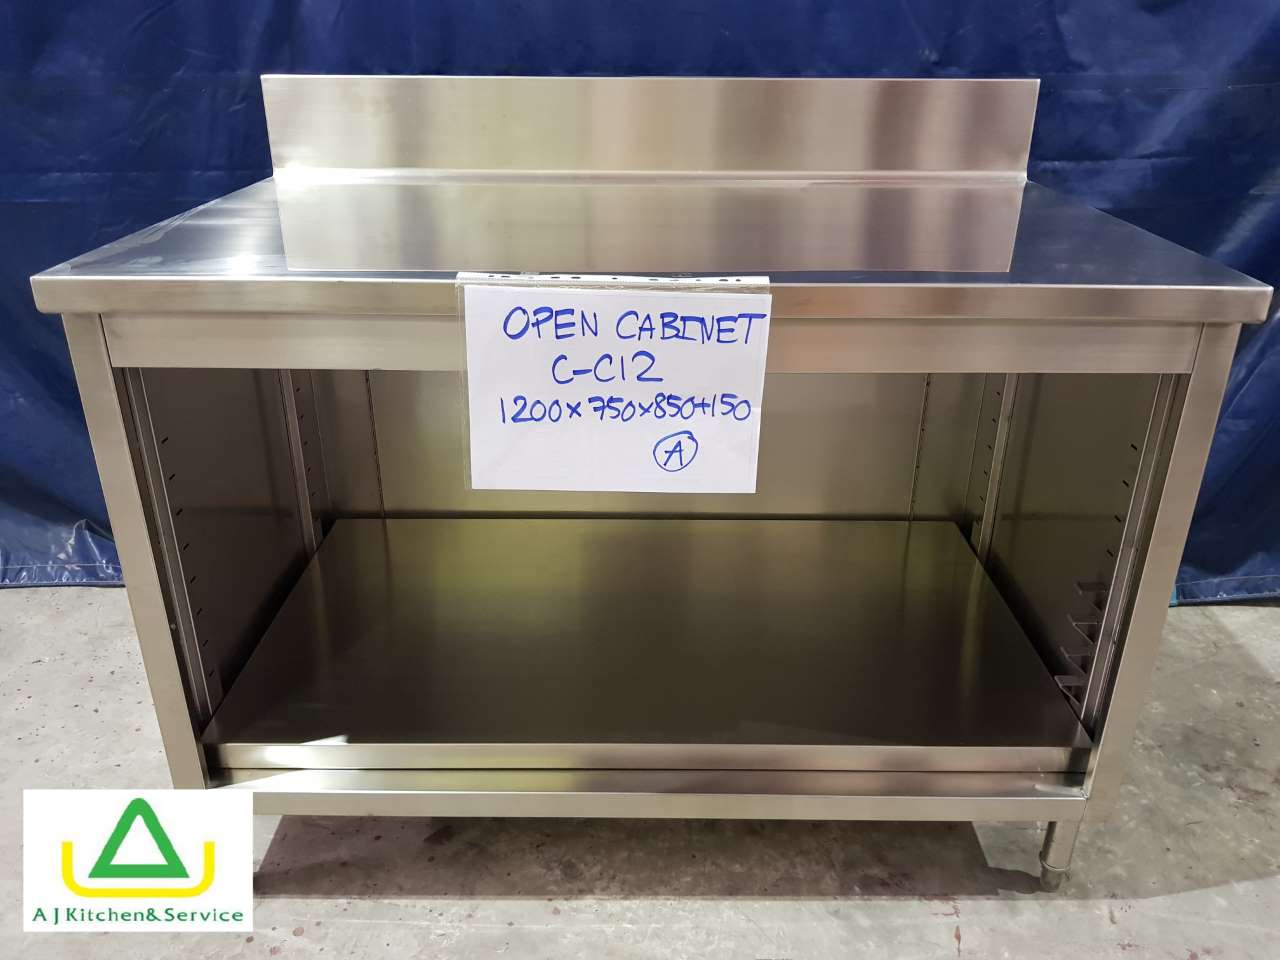 C-C12 Open cabinet